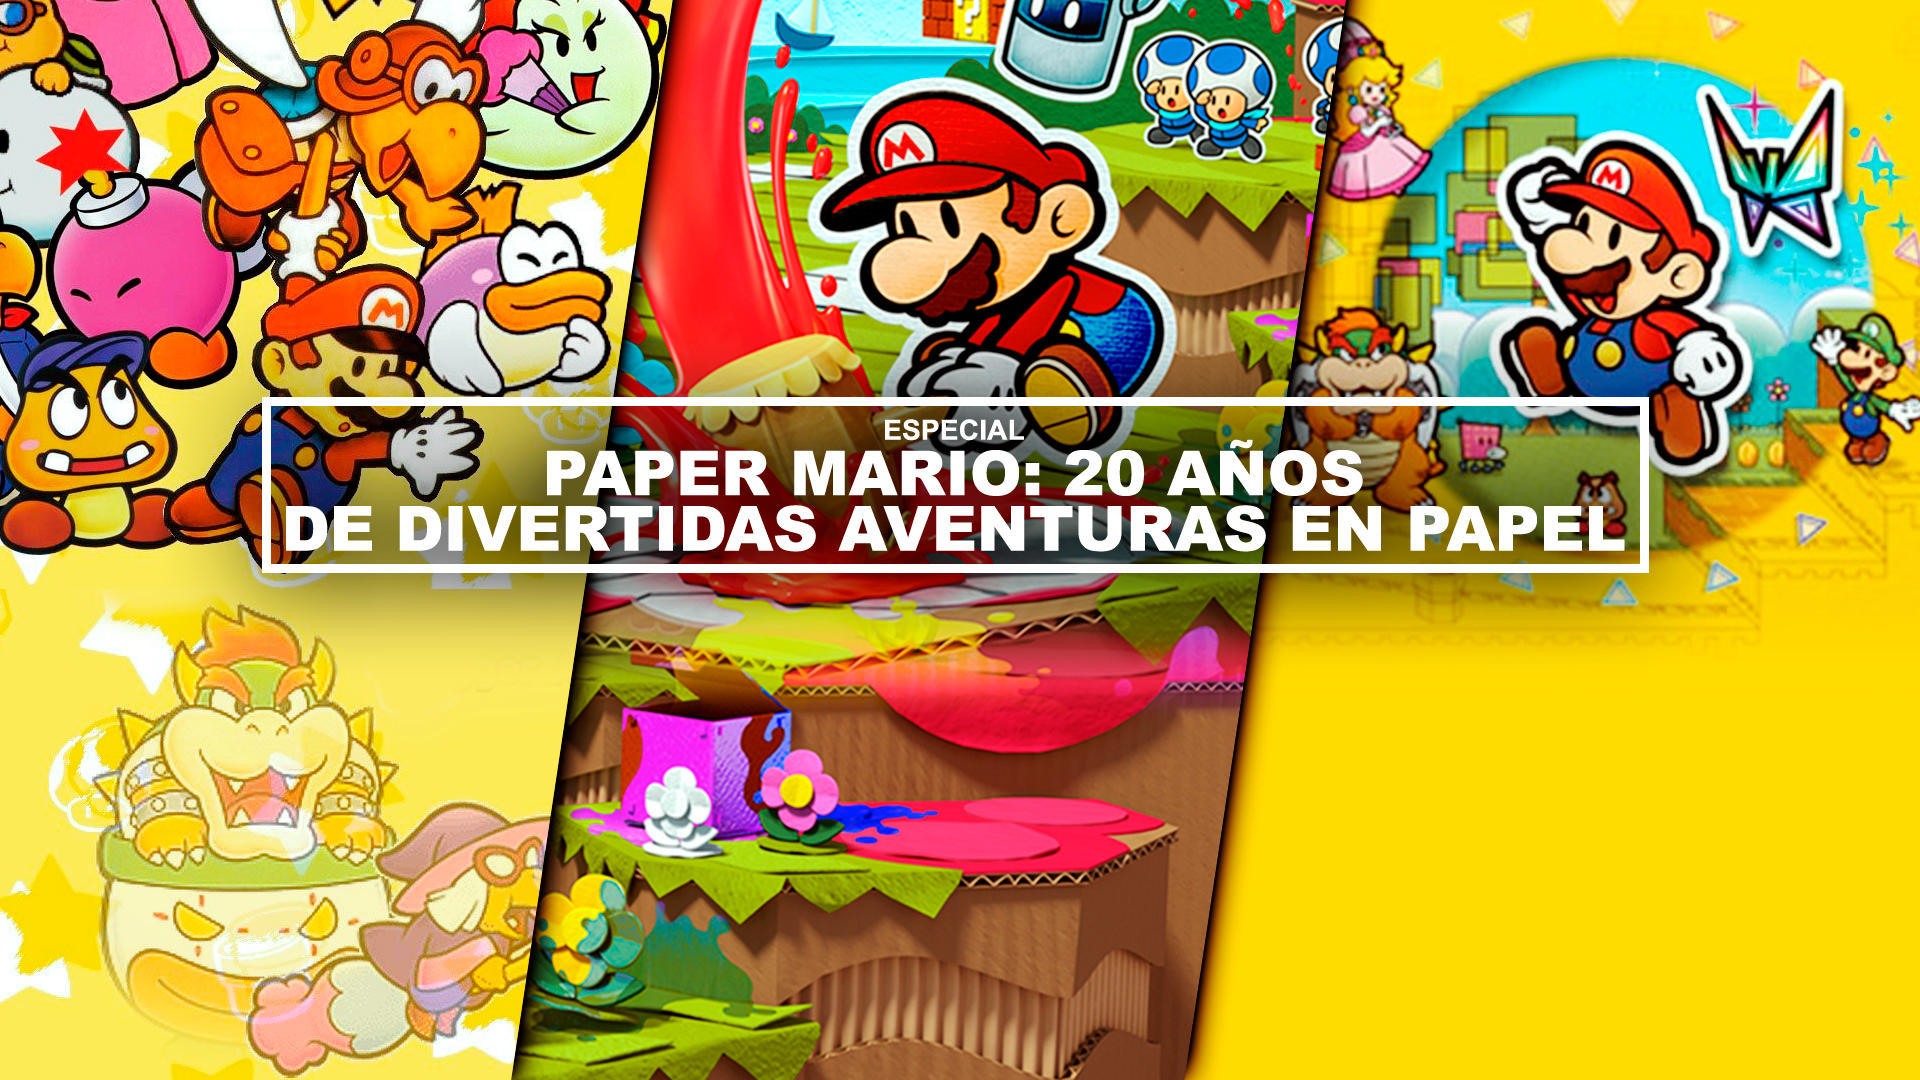 Paper Mario: 20 aos de divertidas aventuras en papel